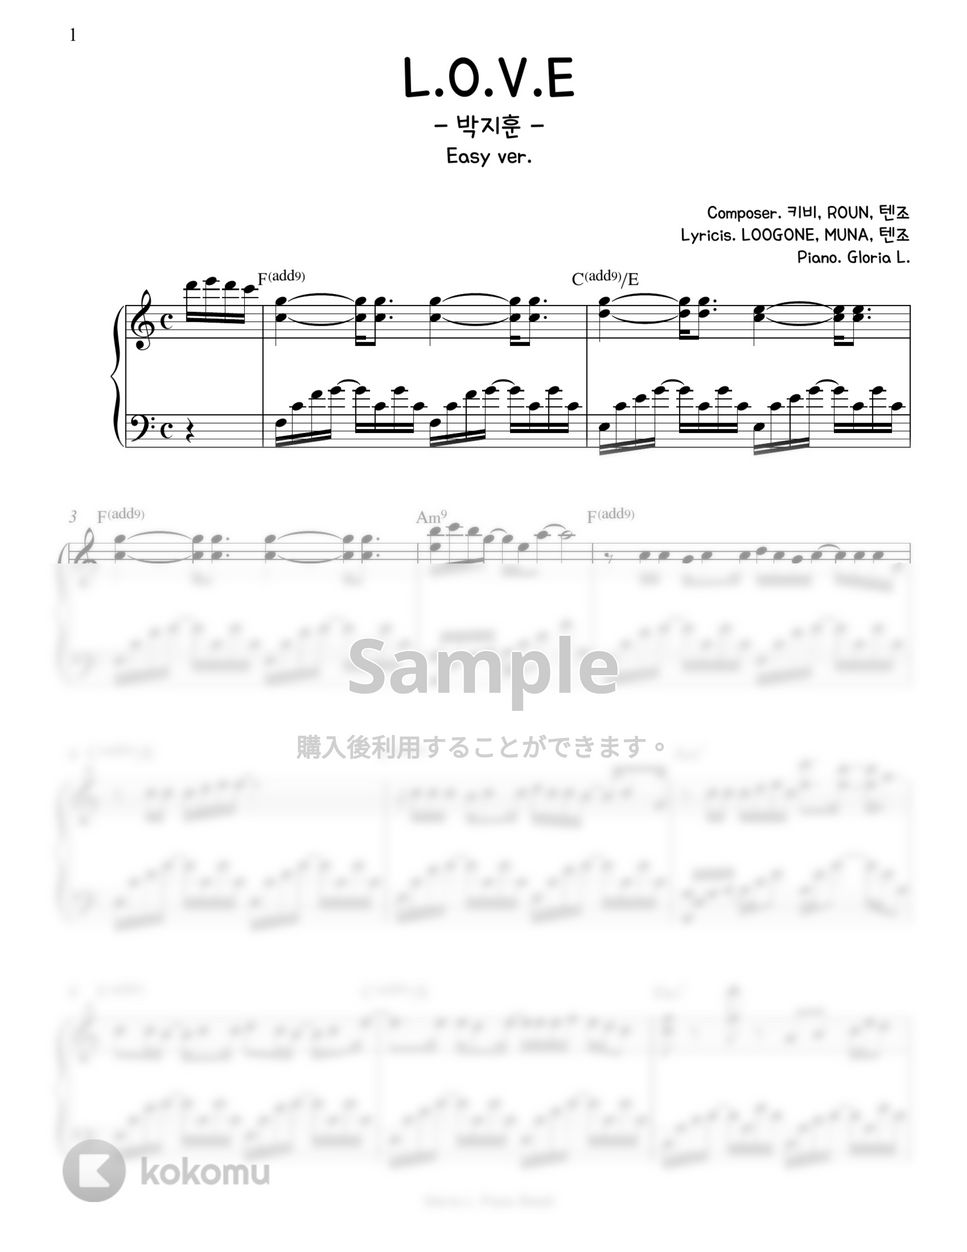 박지훈 (PARK JIHOON) - L.O.V.E (Easy Transpose key) by Gloria L.